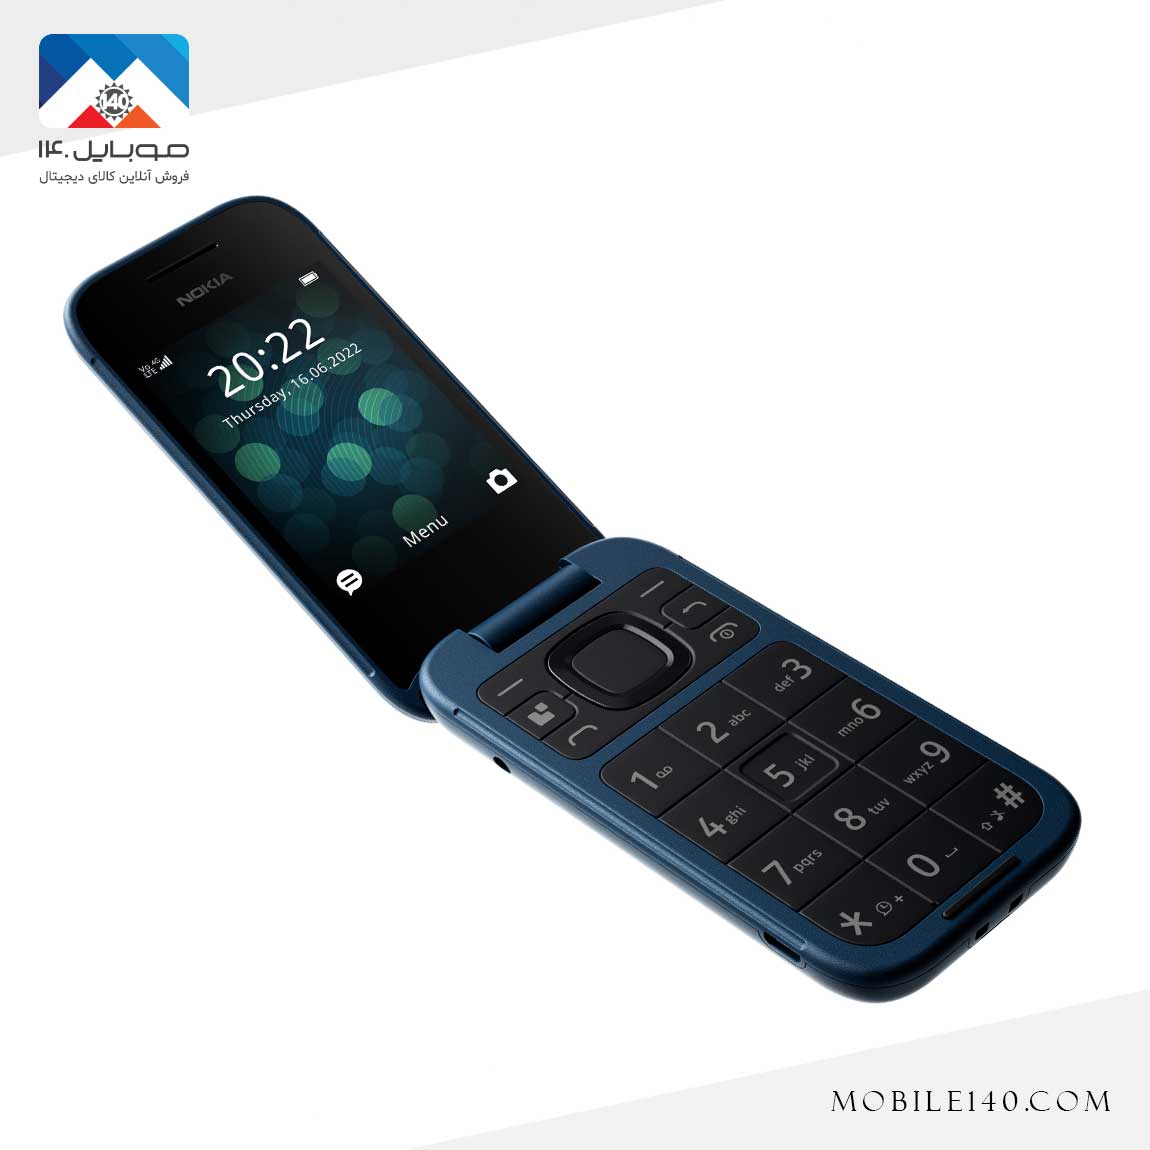 Nokia 2660 4